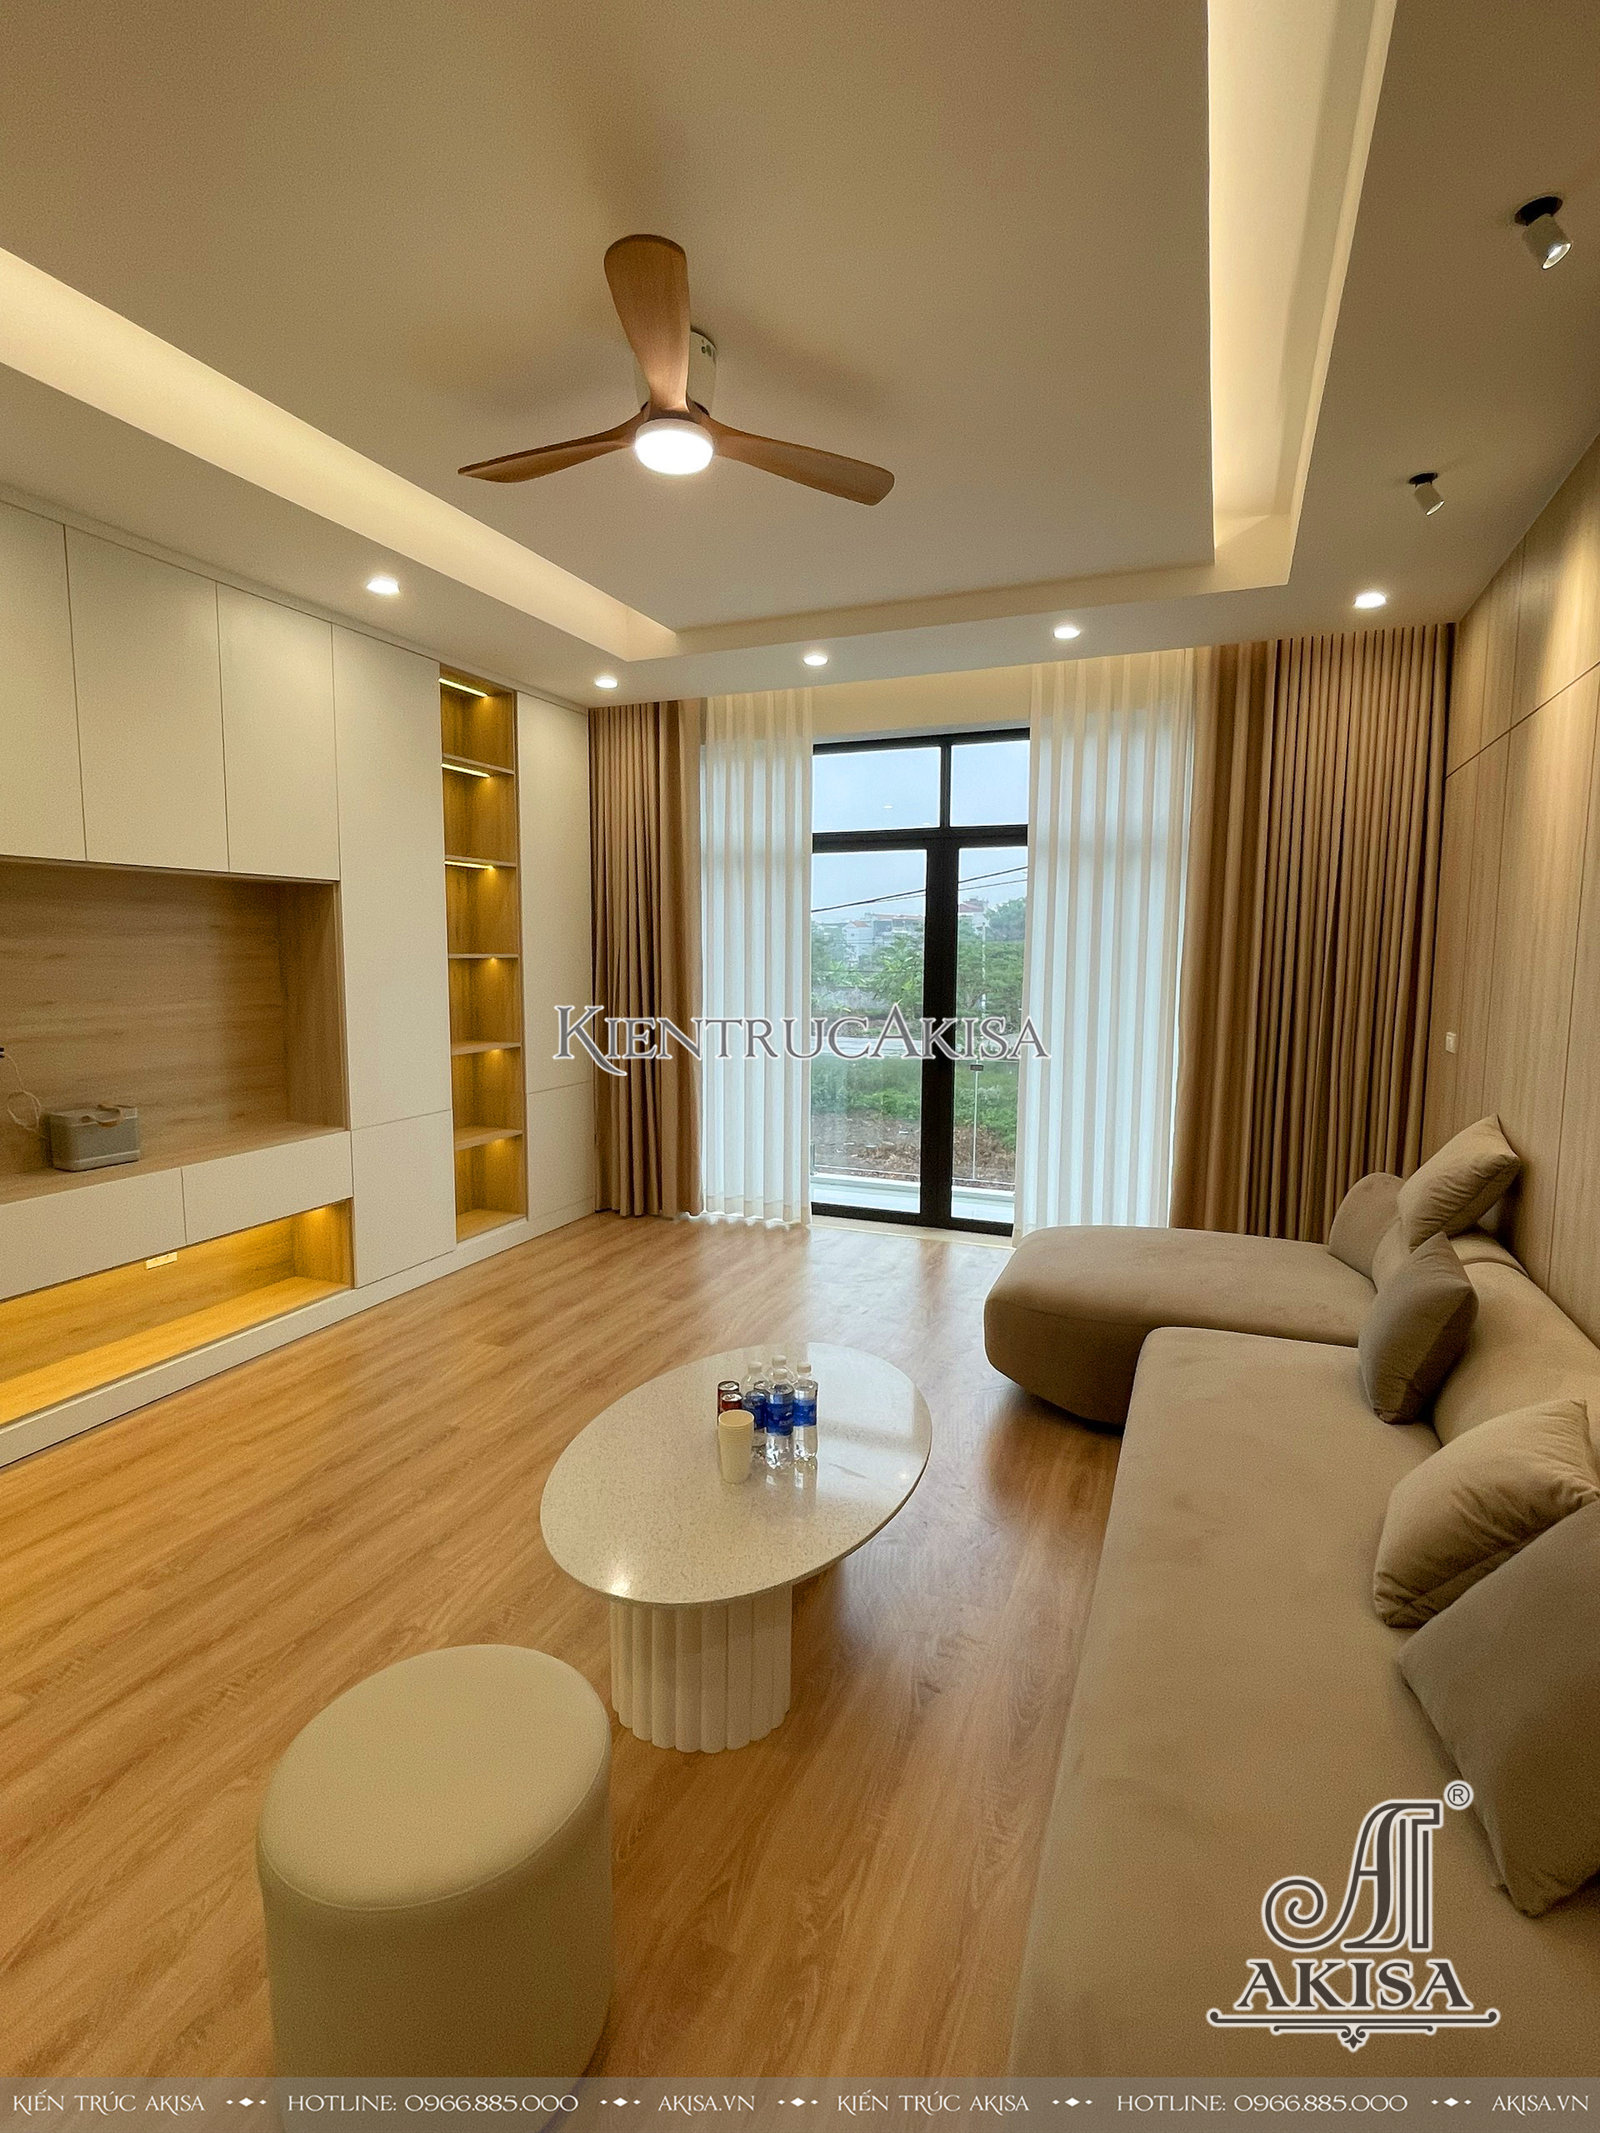 hình ảnh hoàn thiện nội thất nhà phố hiện đại 4 tầng tại Quảng Ninh